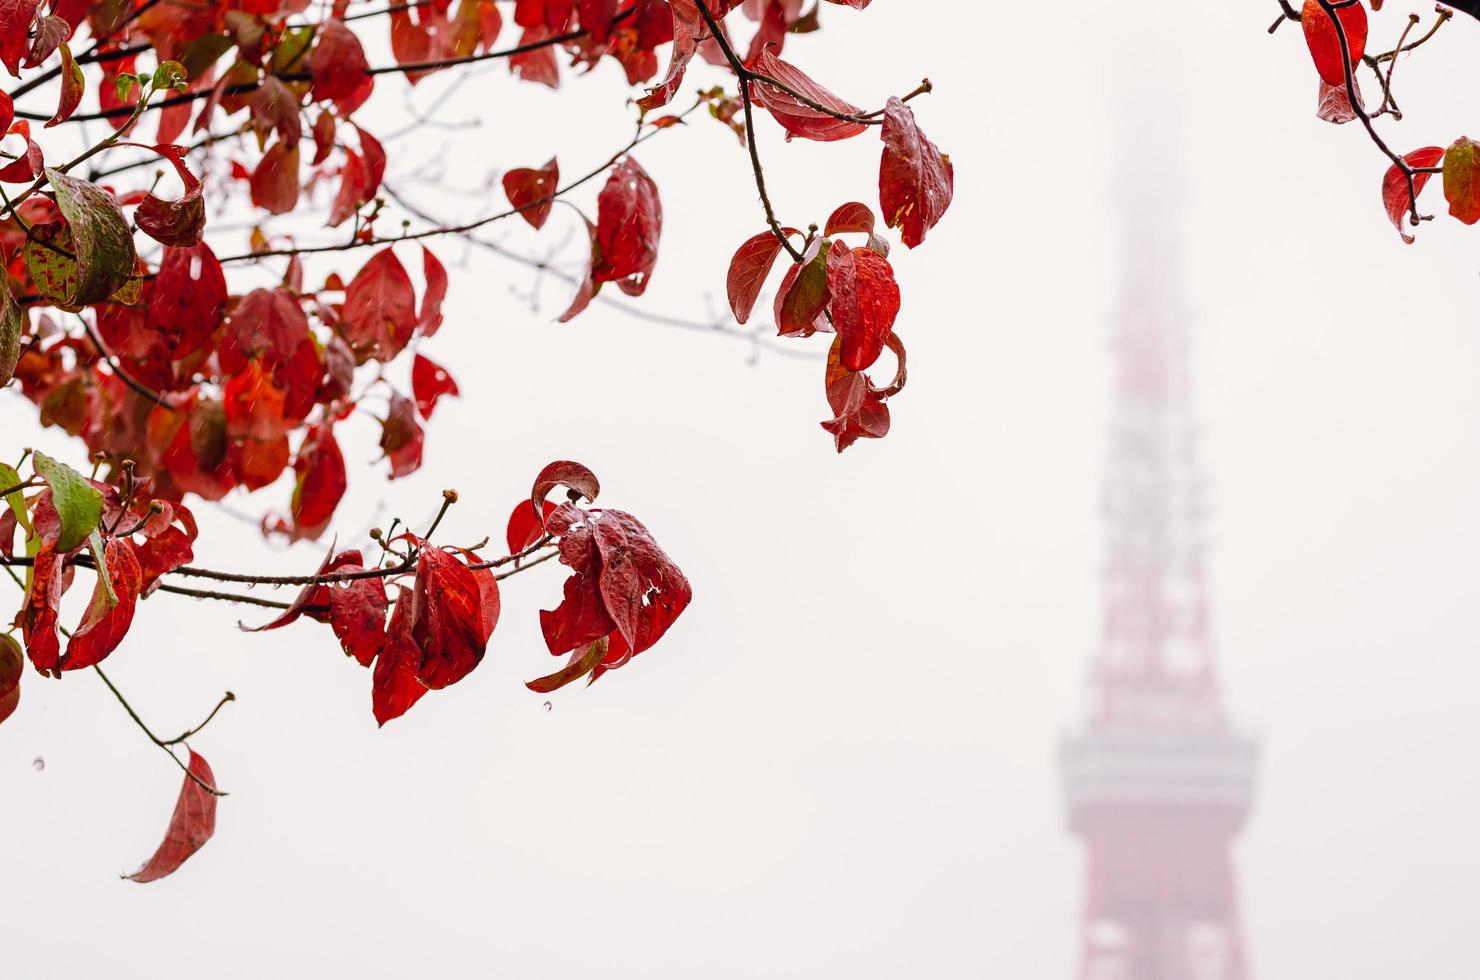 hojas coloridas con fondo borroso de la torre de tokio cuando llueve en otoño. foto